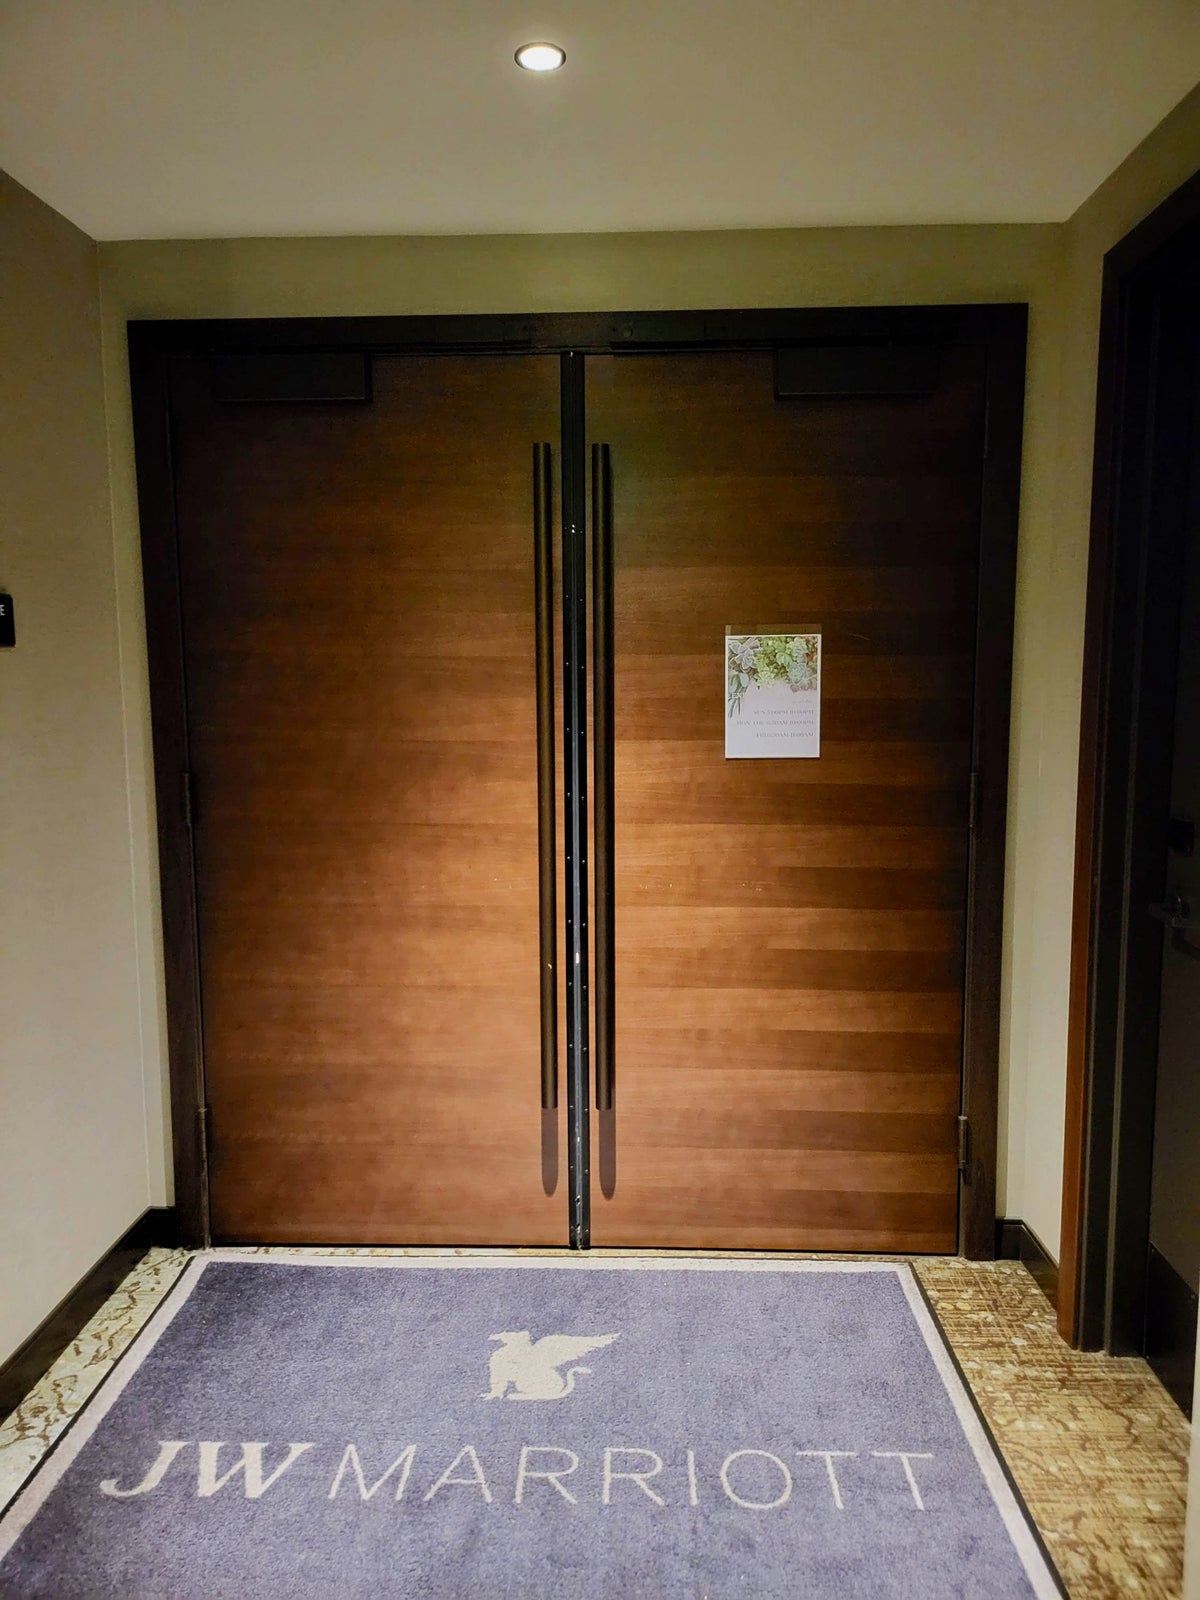 JW Marriott, Anaheim Resort lounge entrance